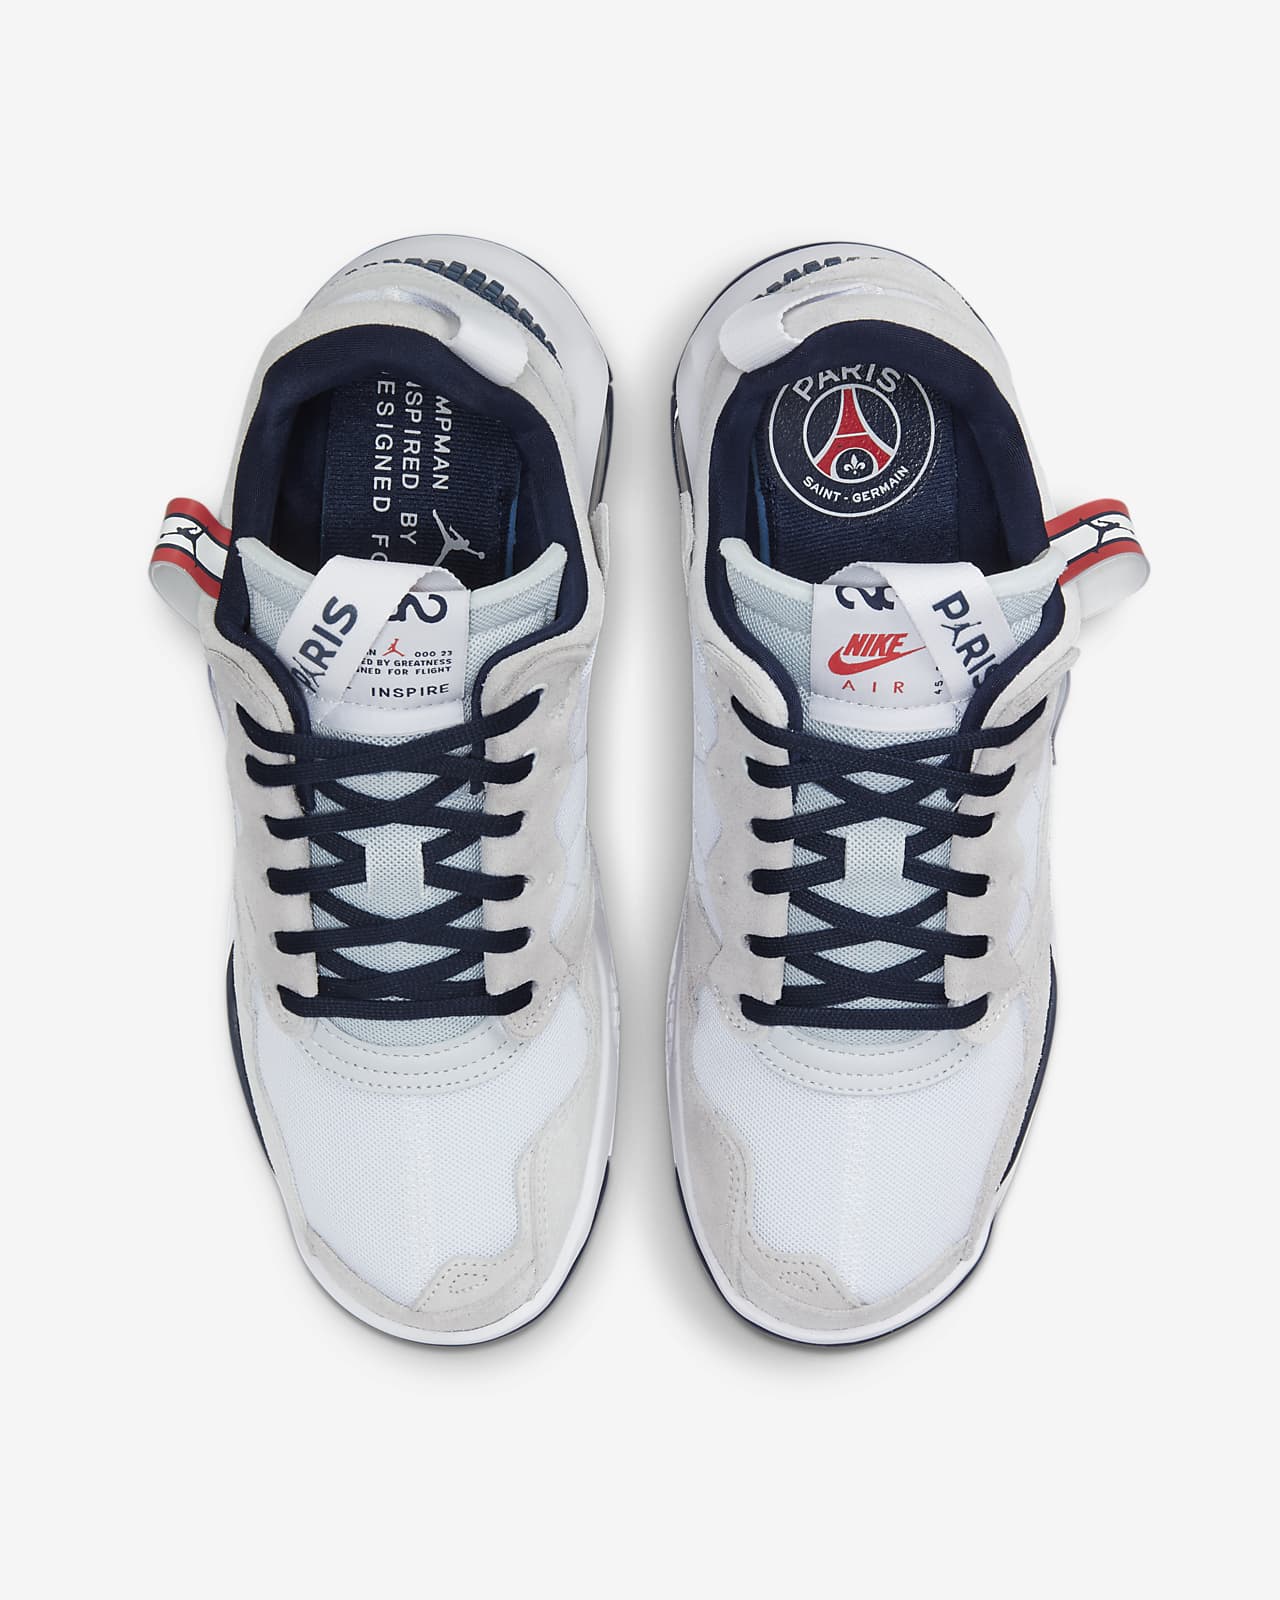 Jordan MA2 Paris Saint-Germain Shoes. Nike LU